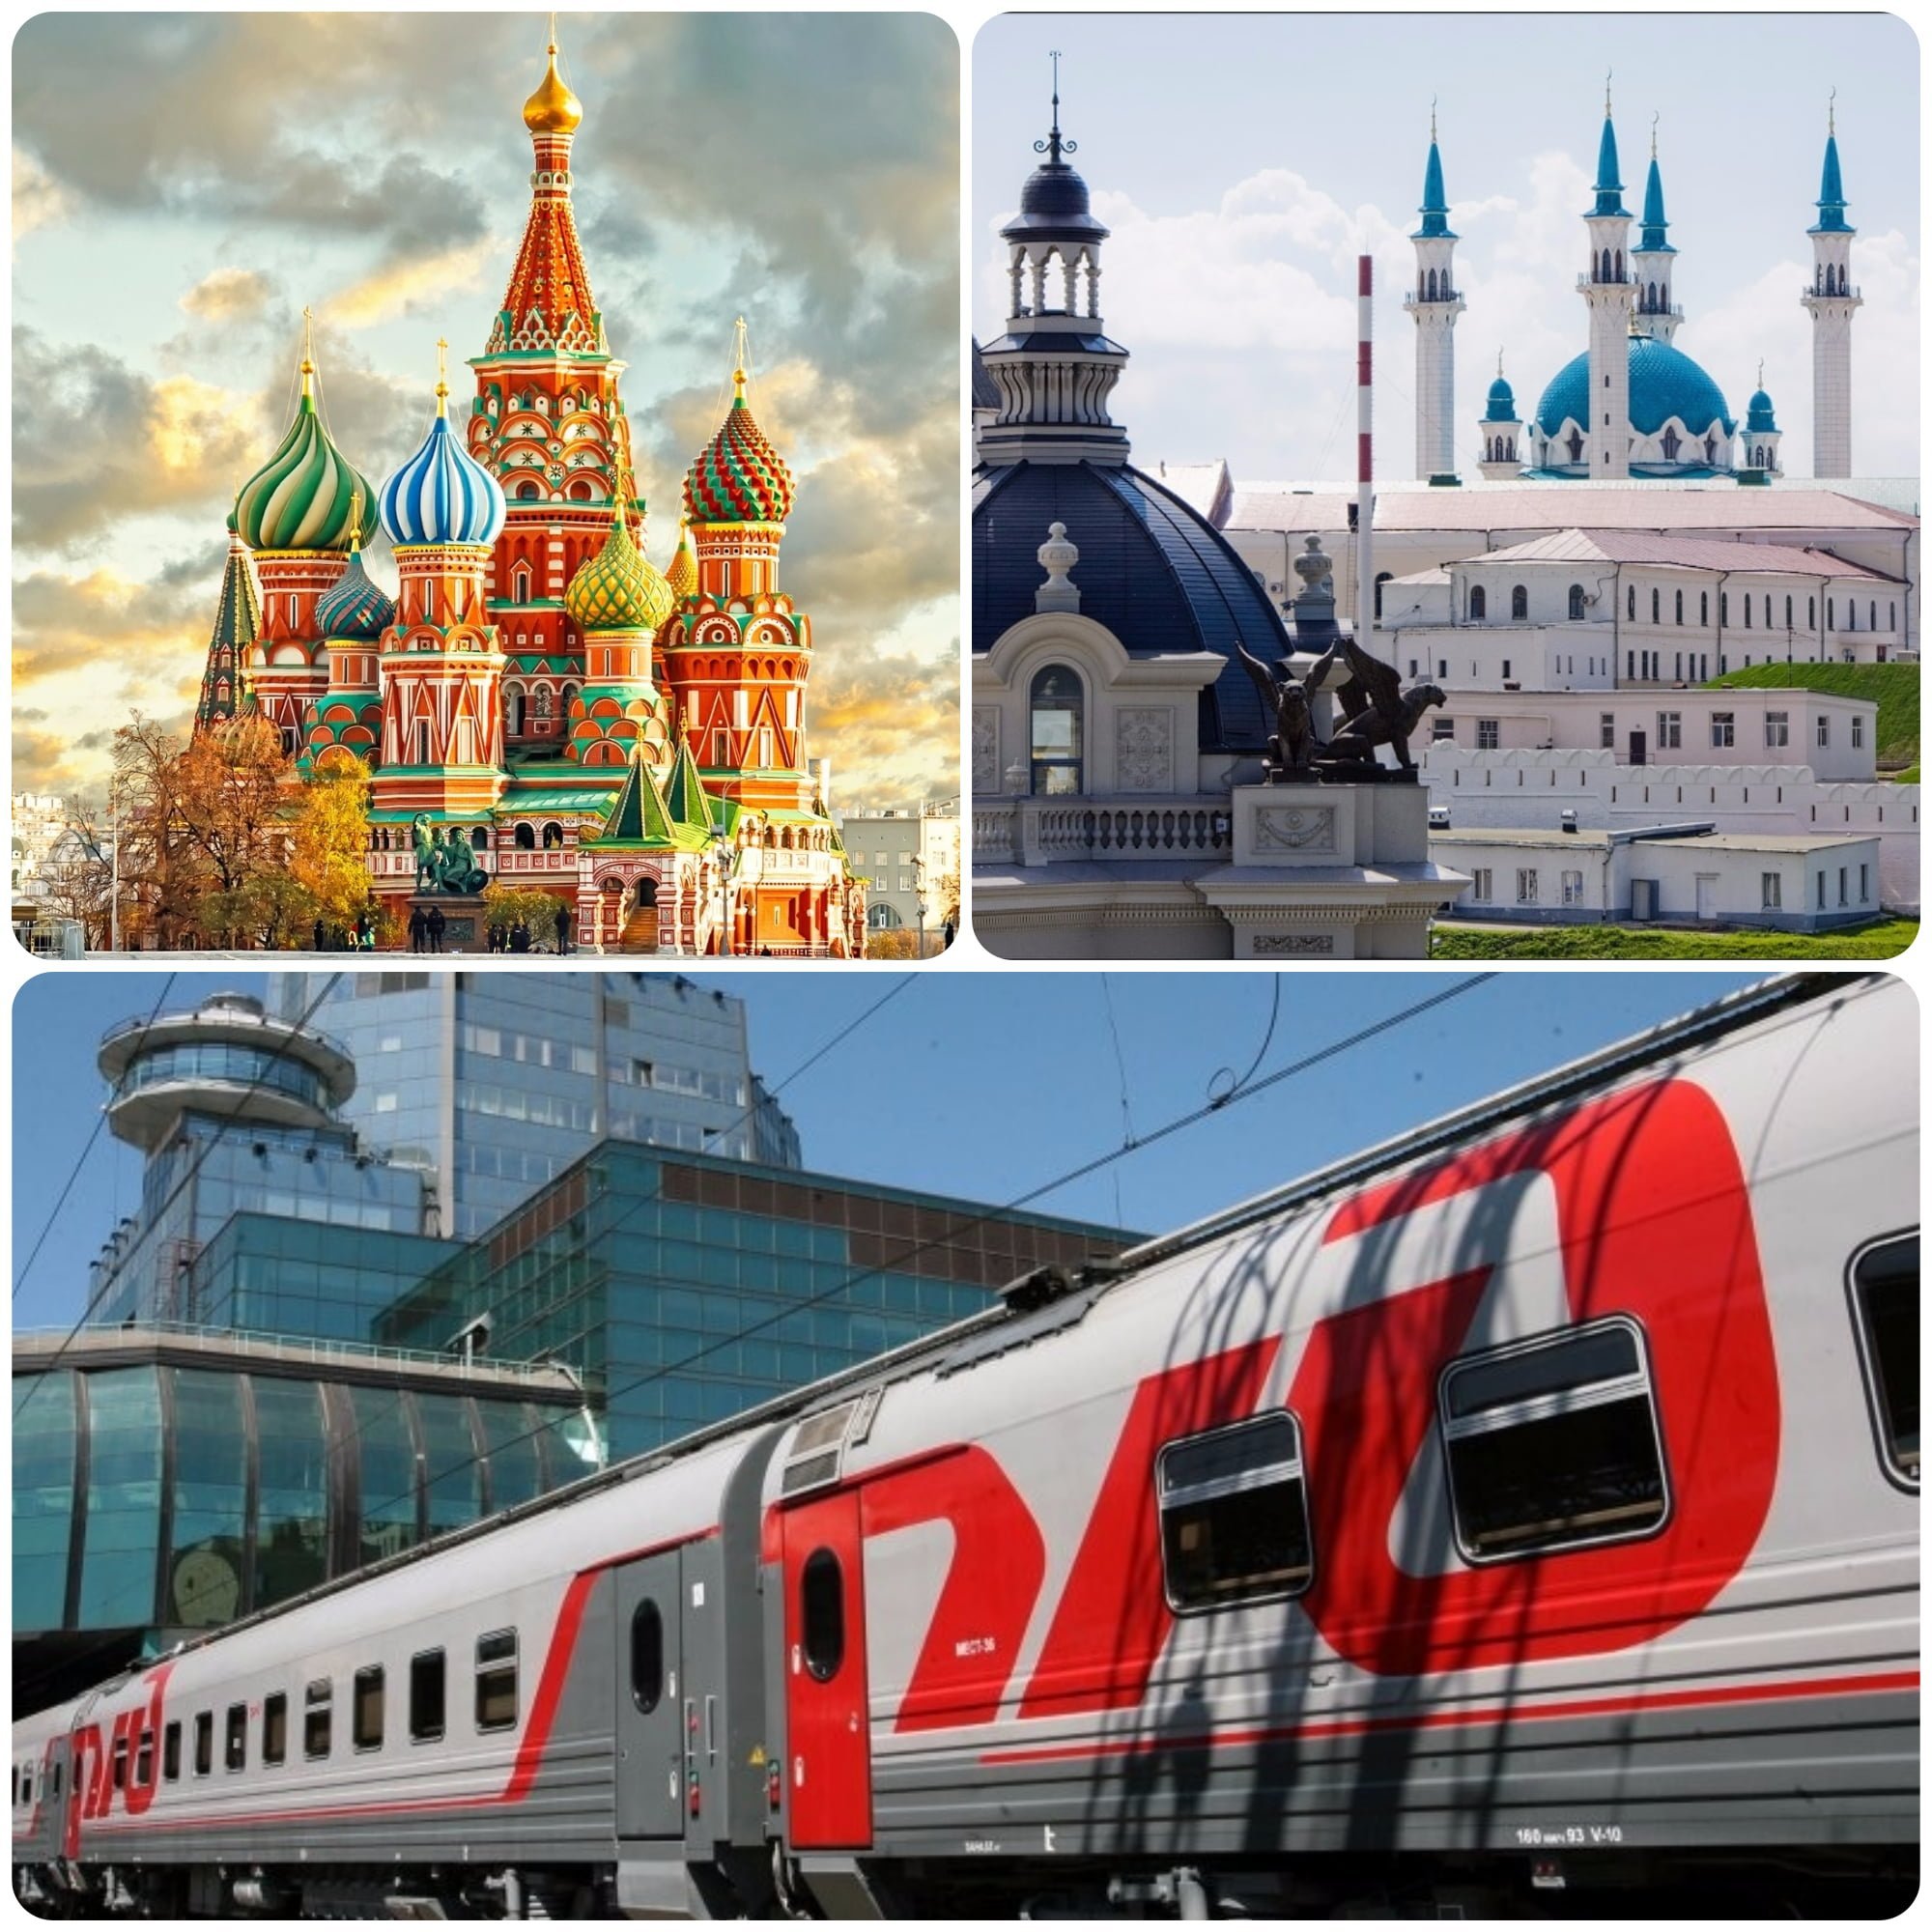 Есть в россии три столицы москва